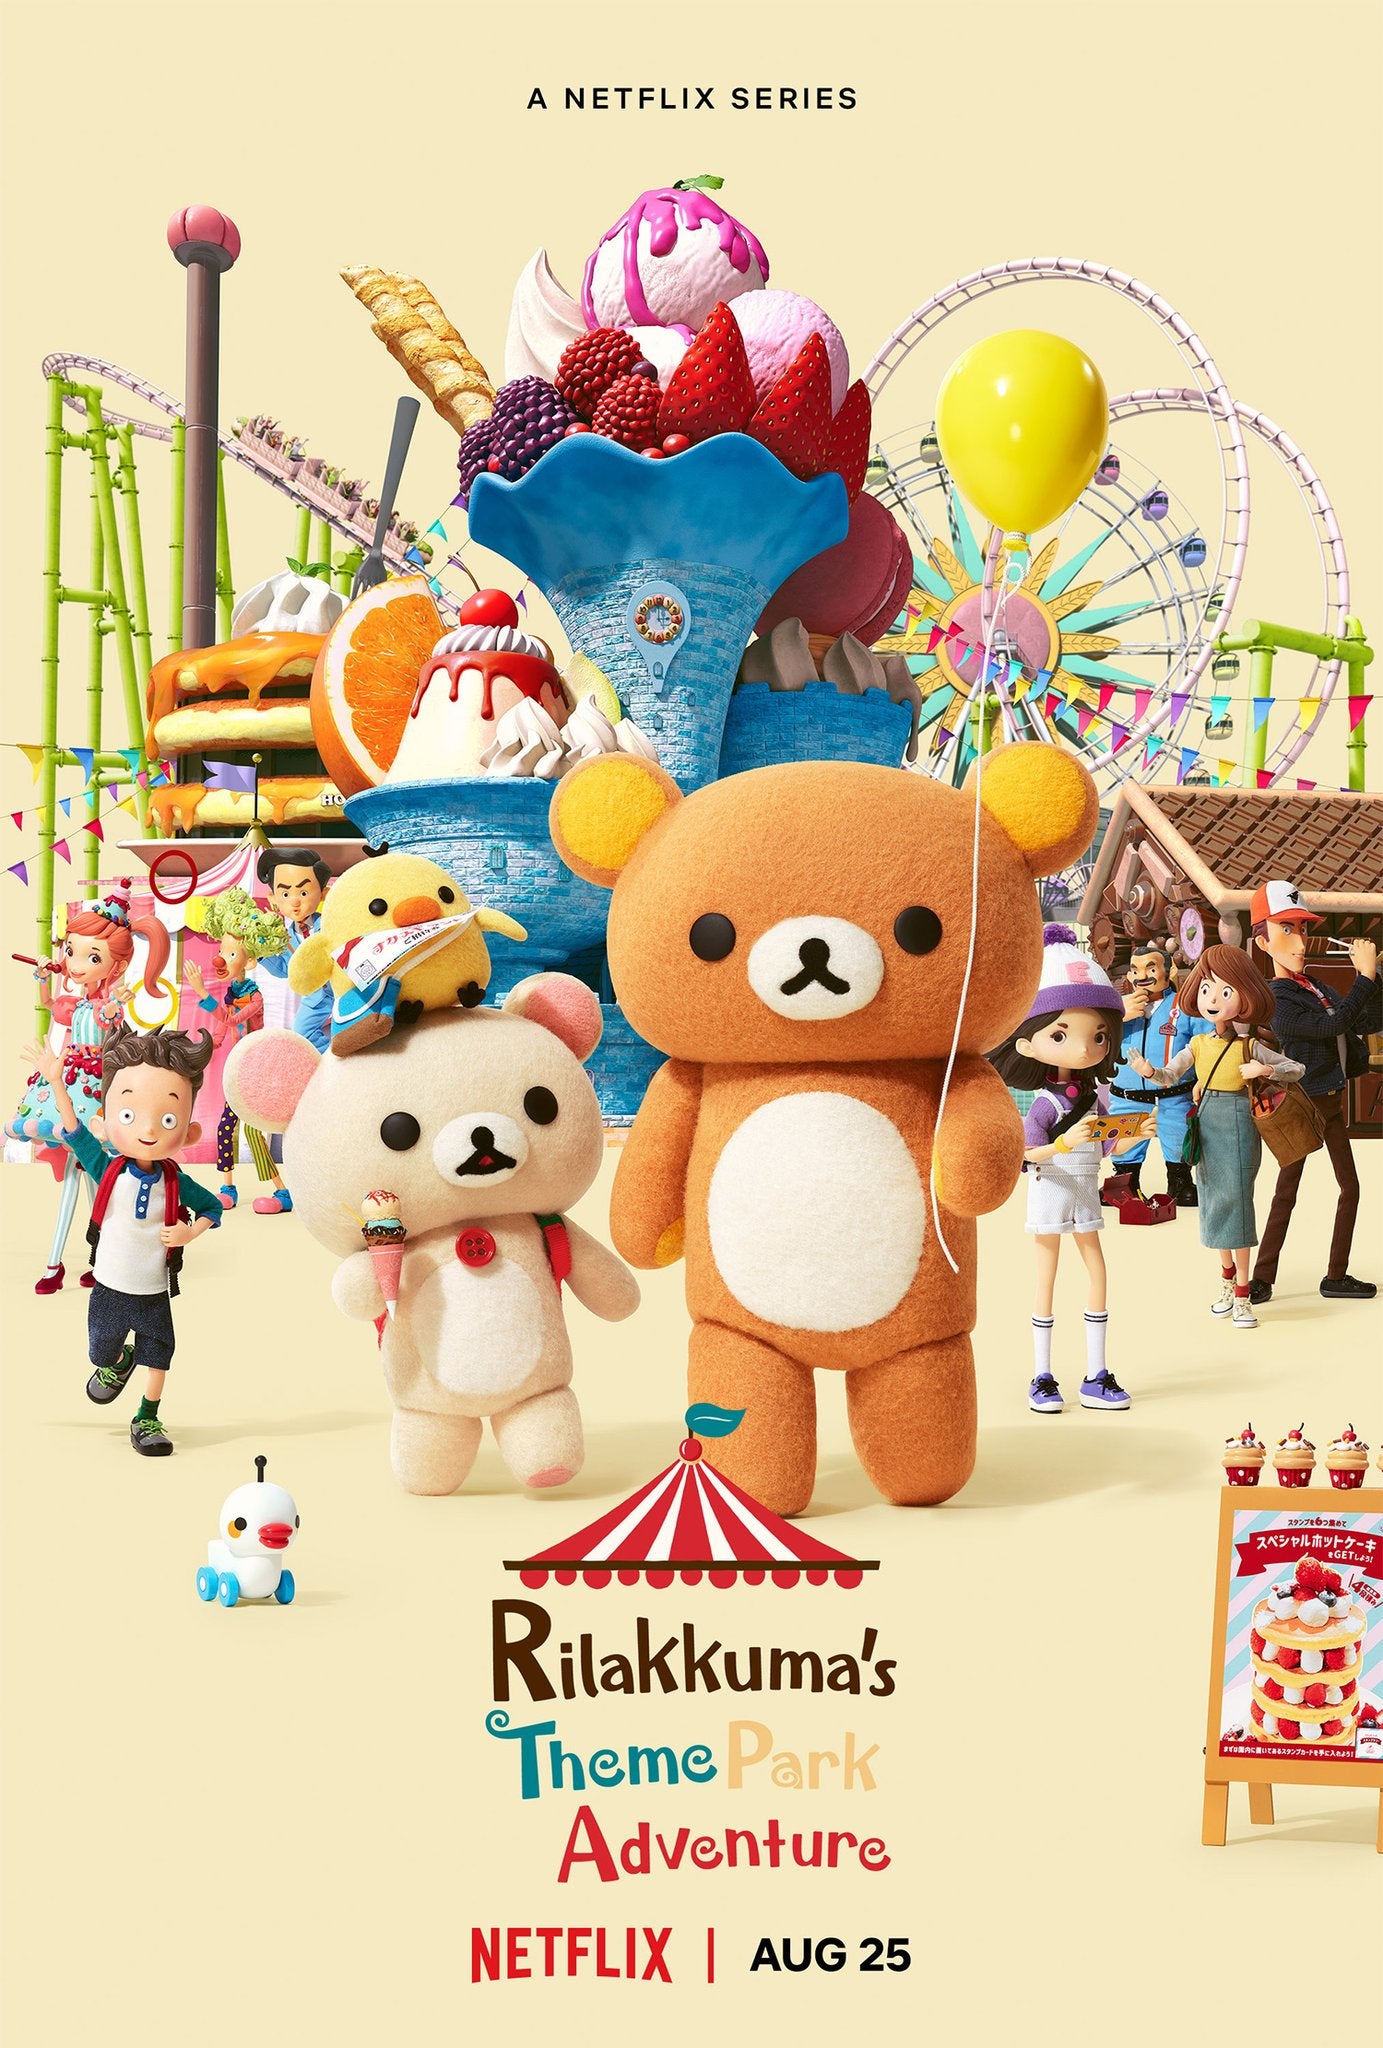 TV ratings for Rilakkuma's Theme Park Adventure (リラックマと遊園地) in Brasil. Netflix TV series